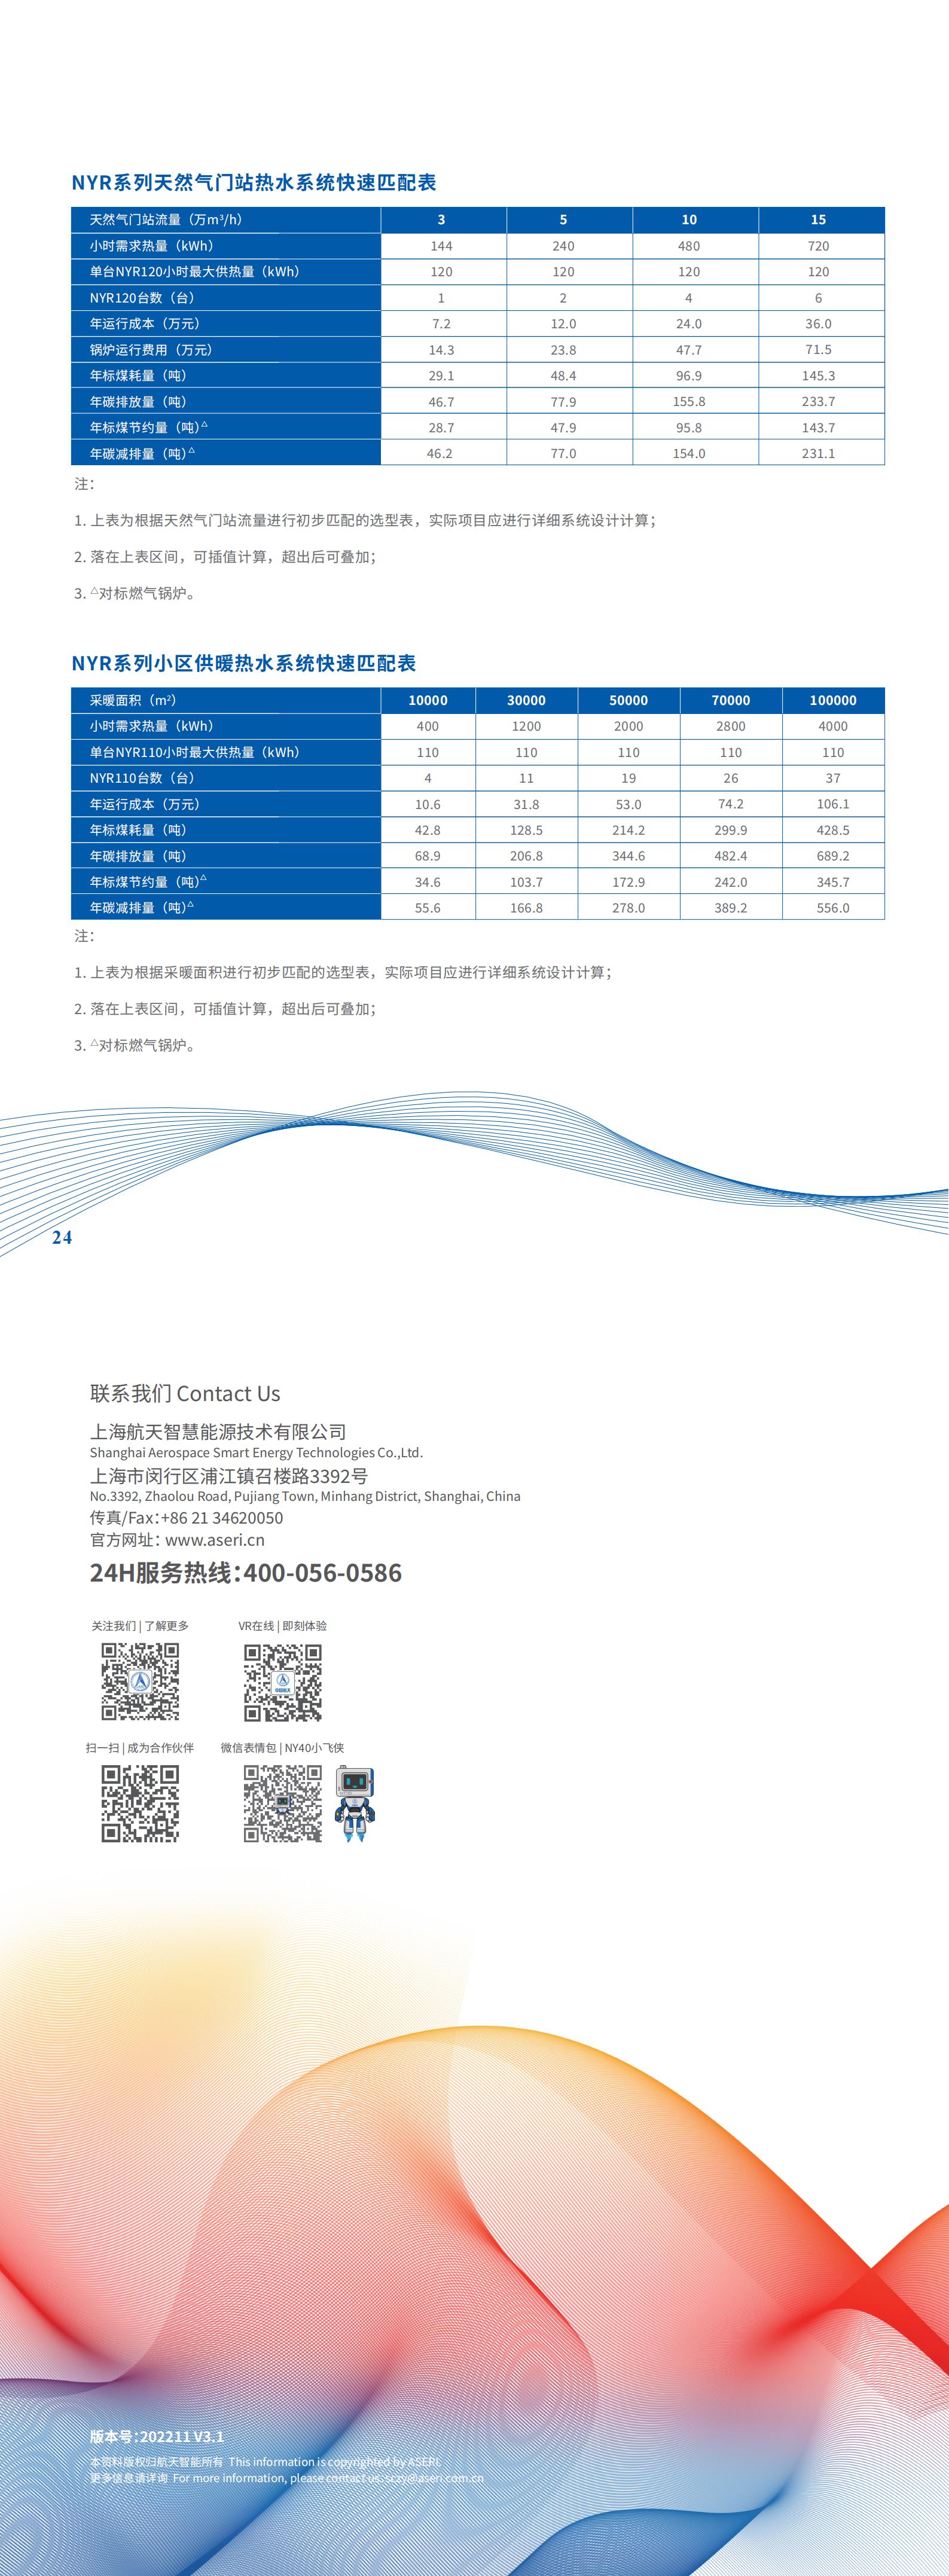 1-NY系列燃气发电热水机组 产品宣传手册 V3.1_2211_02.jpg